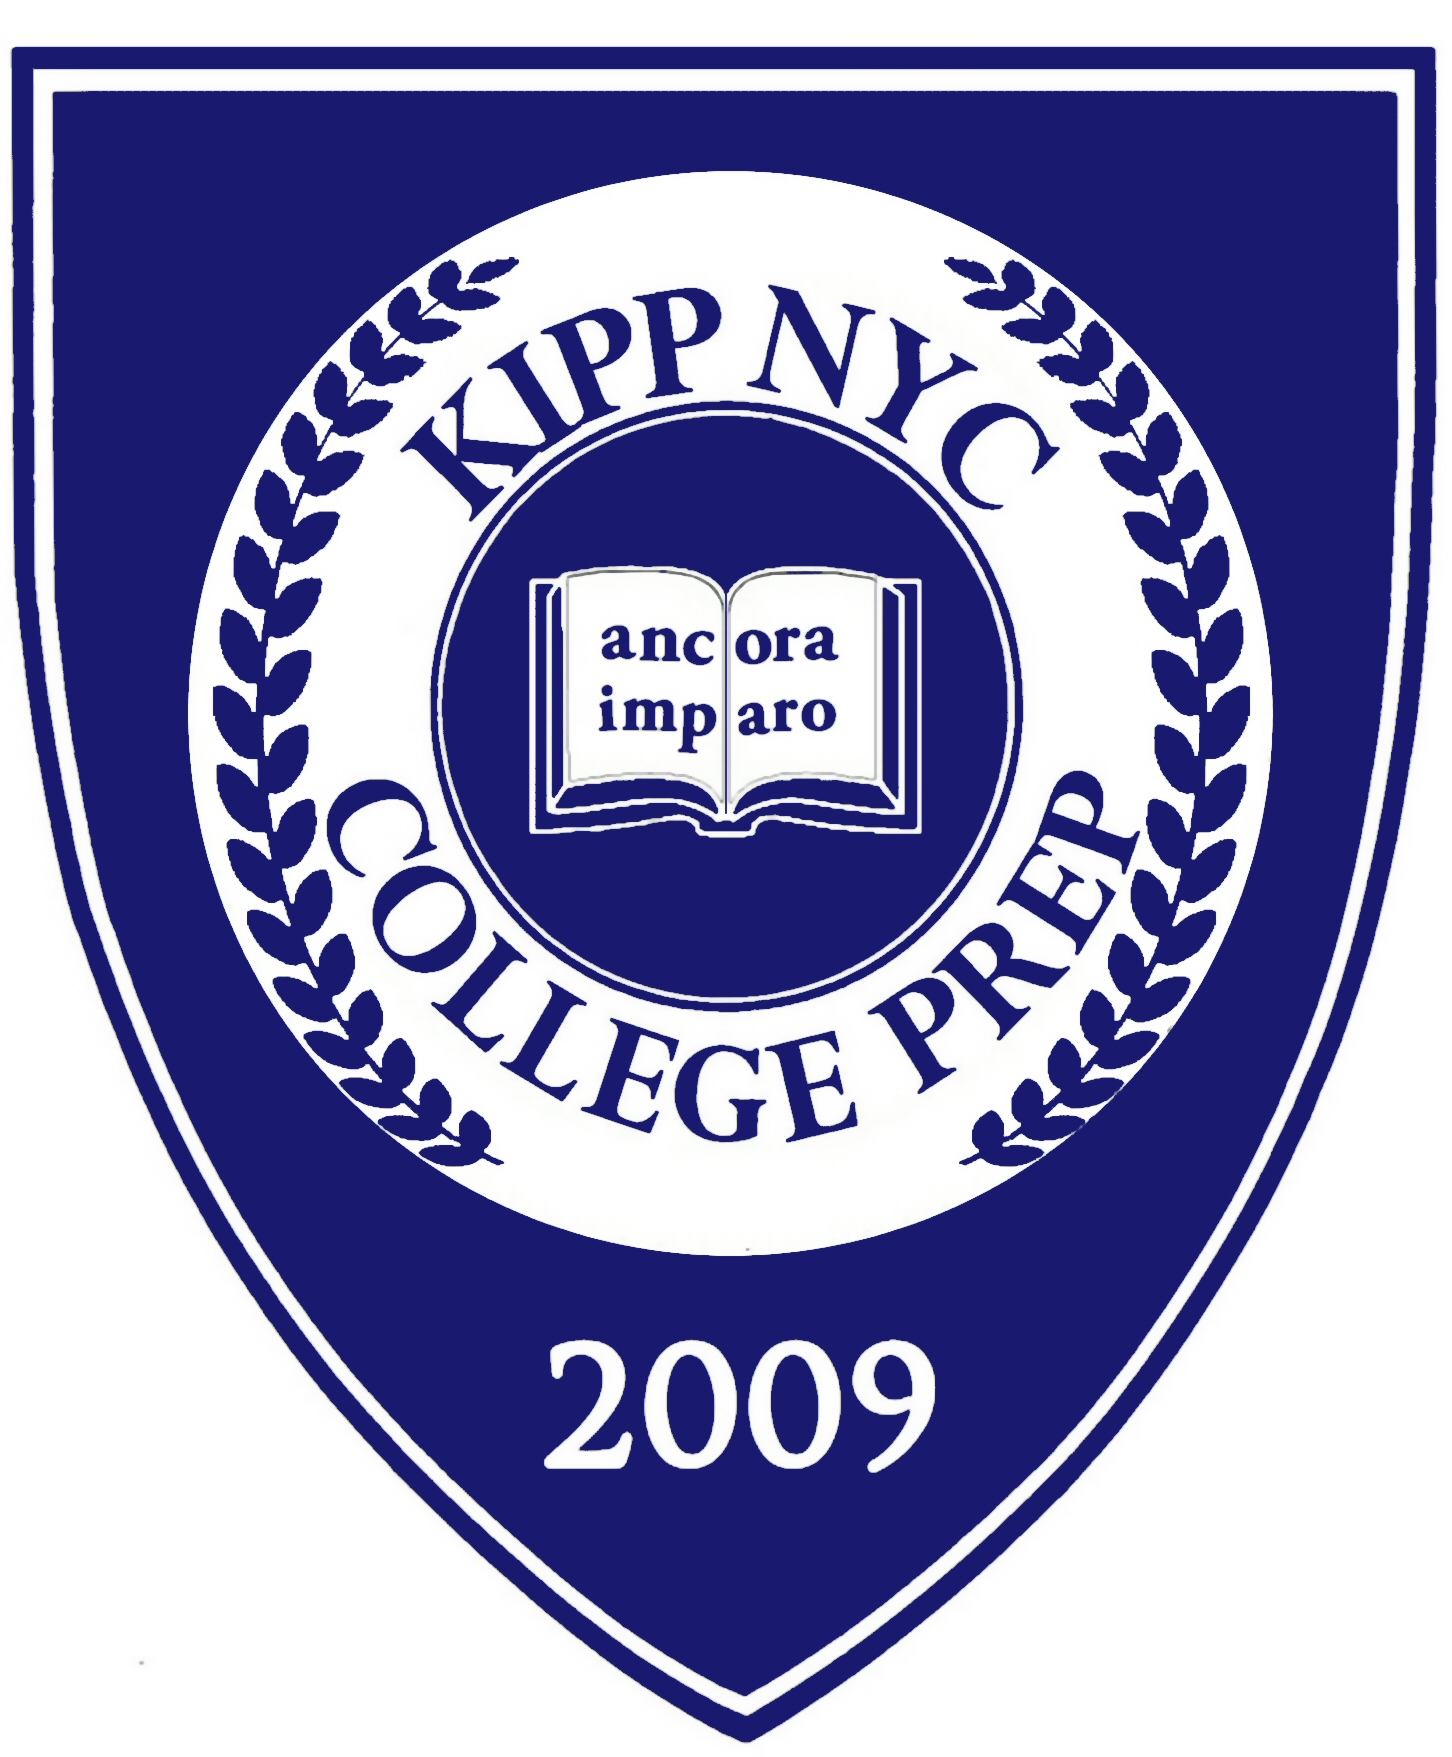 KIPP Academy